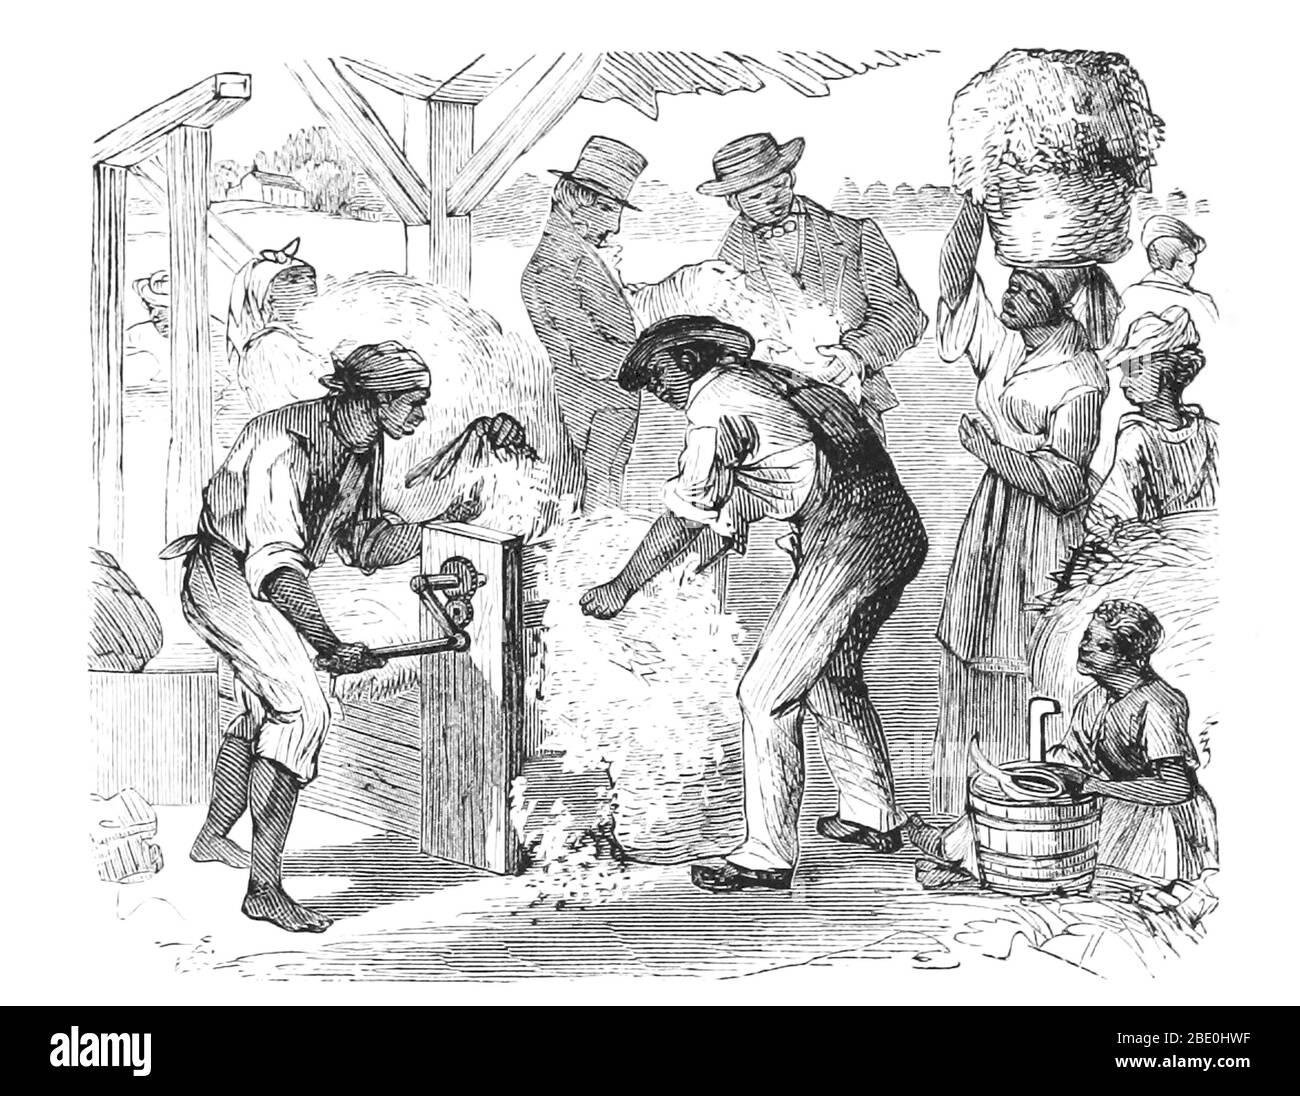 Un coton gin est une machine qui sépare rapidement et facilement les fibres de coton de leurs graines, ce qui permet une productivité beaucoup plus grande que la séparation manuelle du coton. Les fibres sont transformées en vêtements ou en autres produits de coton, et tout coton non endommagé a été utilisé pour les vêtements. Les graines peuvent être utilisées pour cultiver plus de coton ou pour produire de l'huile et des repas de coton. Le premier coton mécanique moderne gin a été créé par Eli Whitney en 1793 et breveté en 1794. Il a utilisé une combinaison d'un tamis métallique et de petits crochets pour tirer le coton à travers, tandis que les brosses ont continuellement retiré les peluches de coton non fixées pour empêcher Banque D'Images